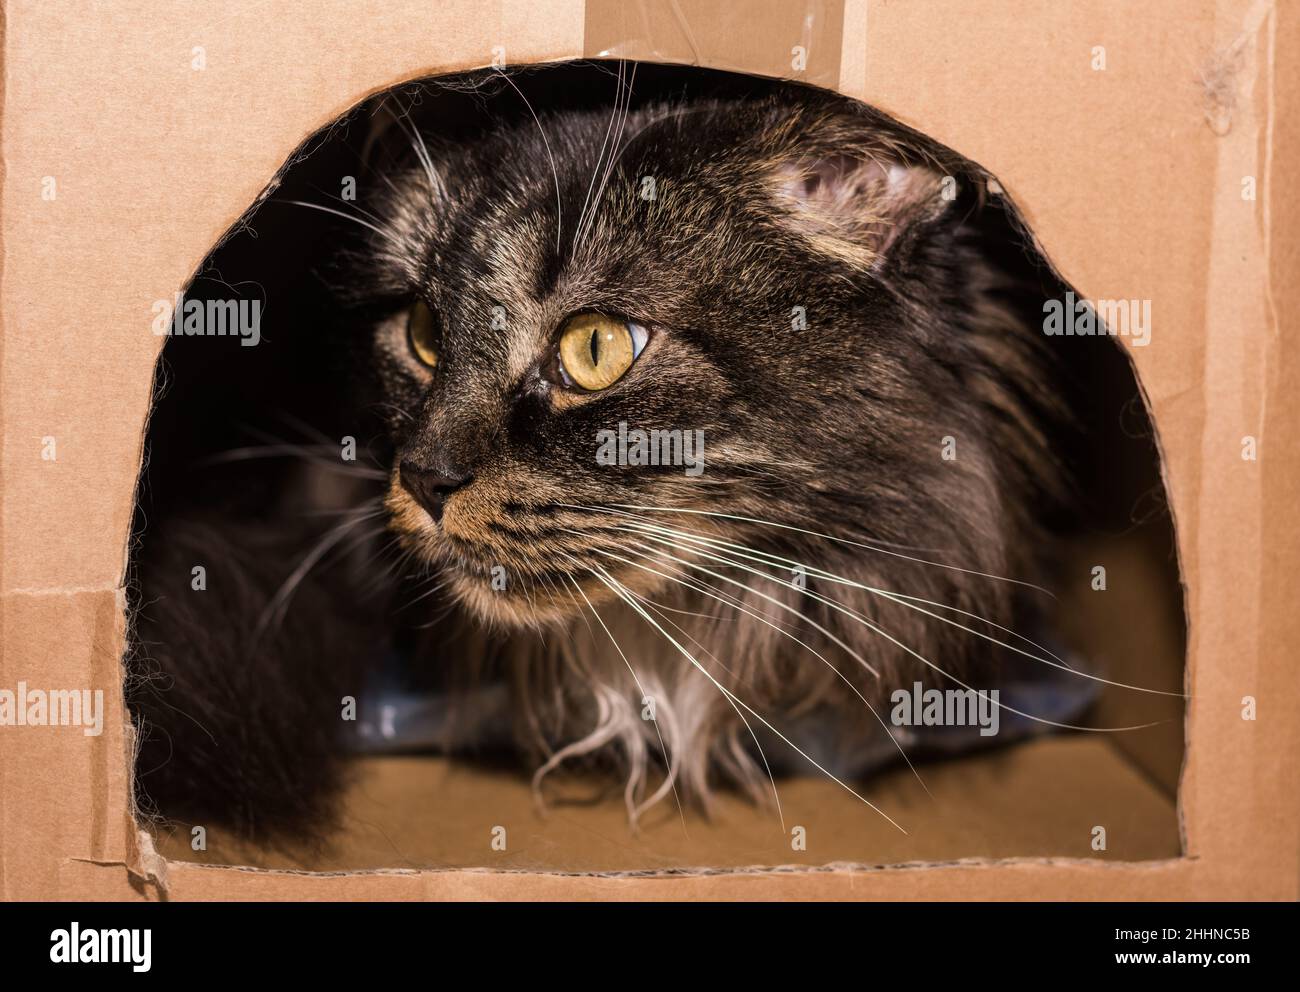 cher chat de maine coon allongé dans une boîte avec ouverture Banque D'Images